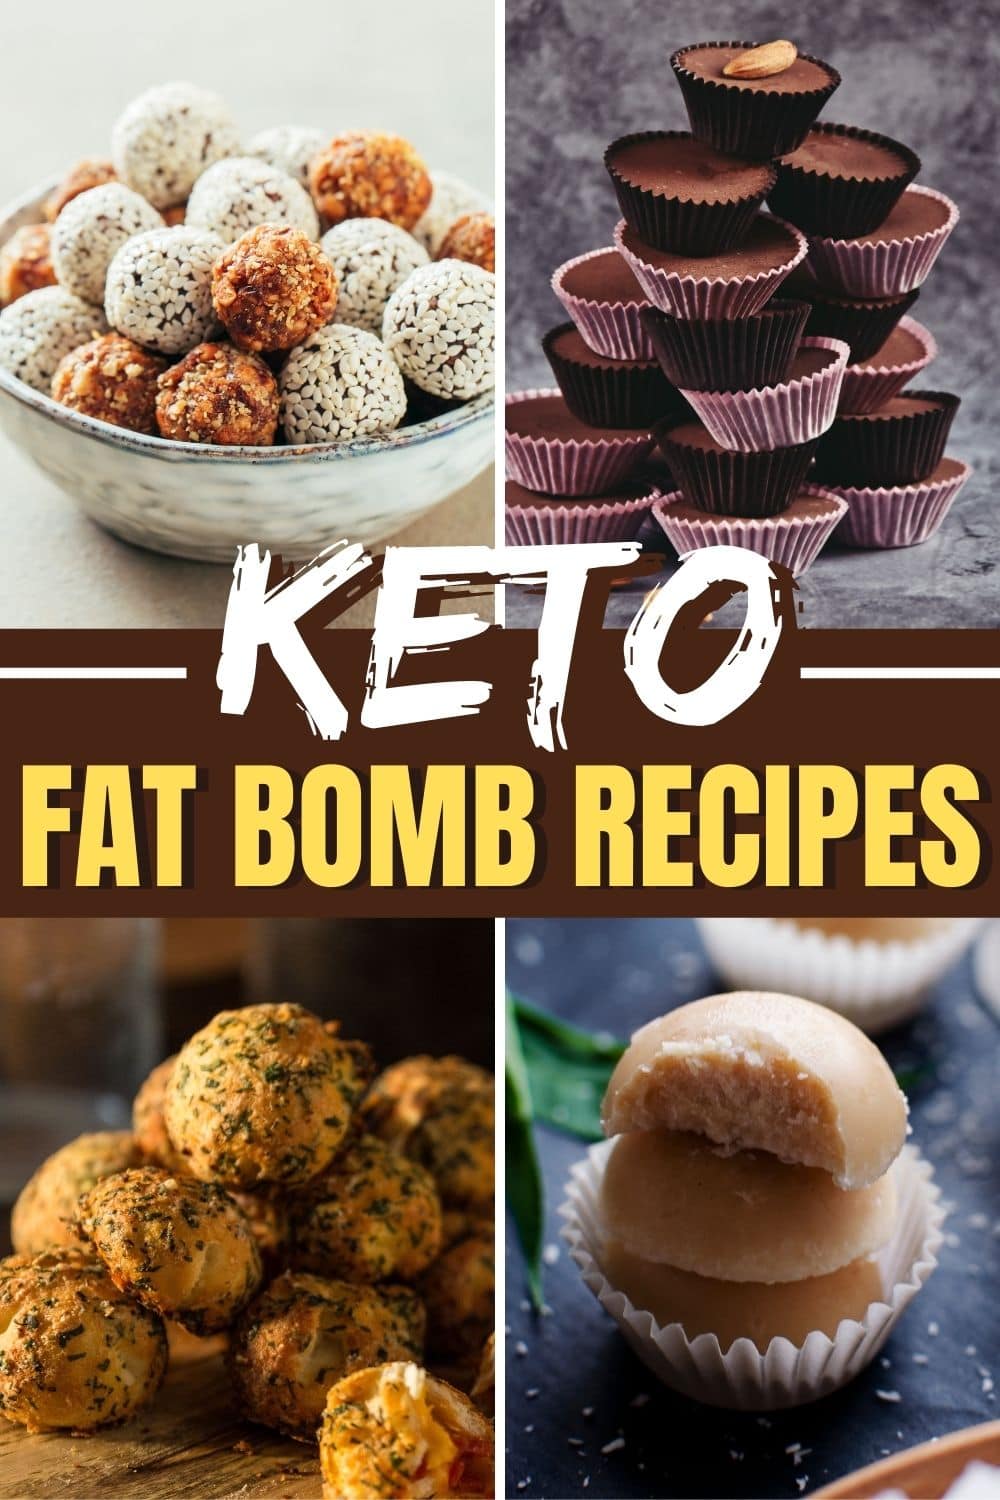 20 Easy Keto Fat Bomb Recipes - Insanely Good